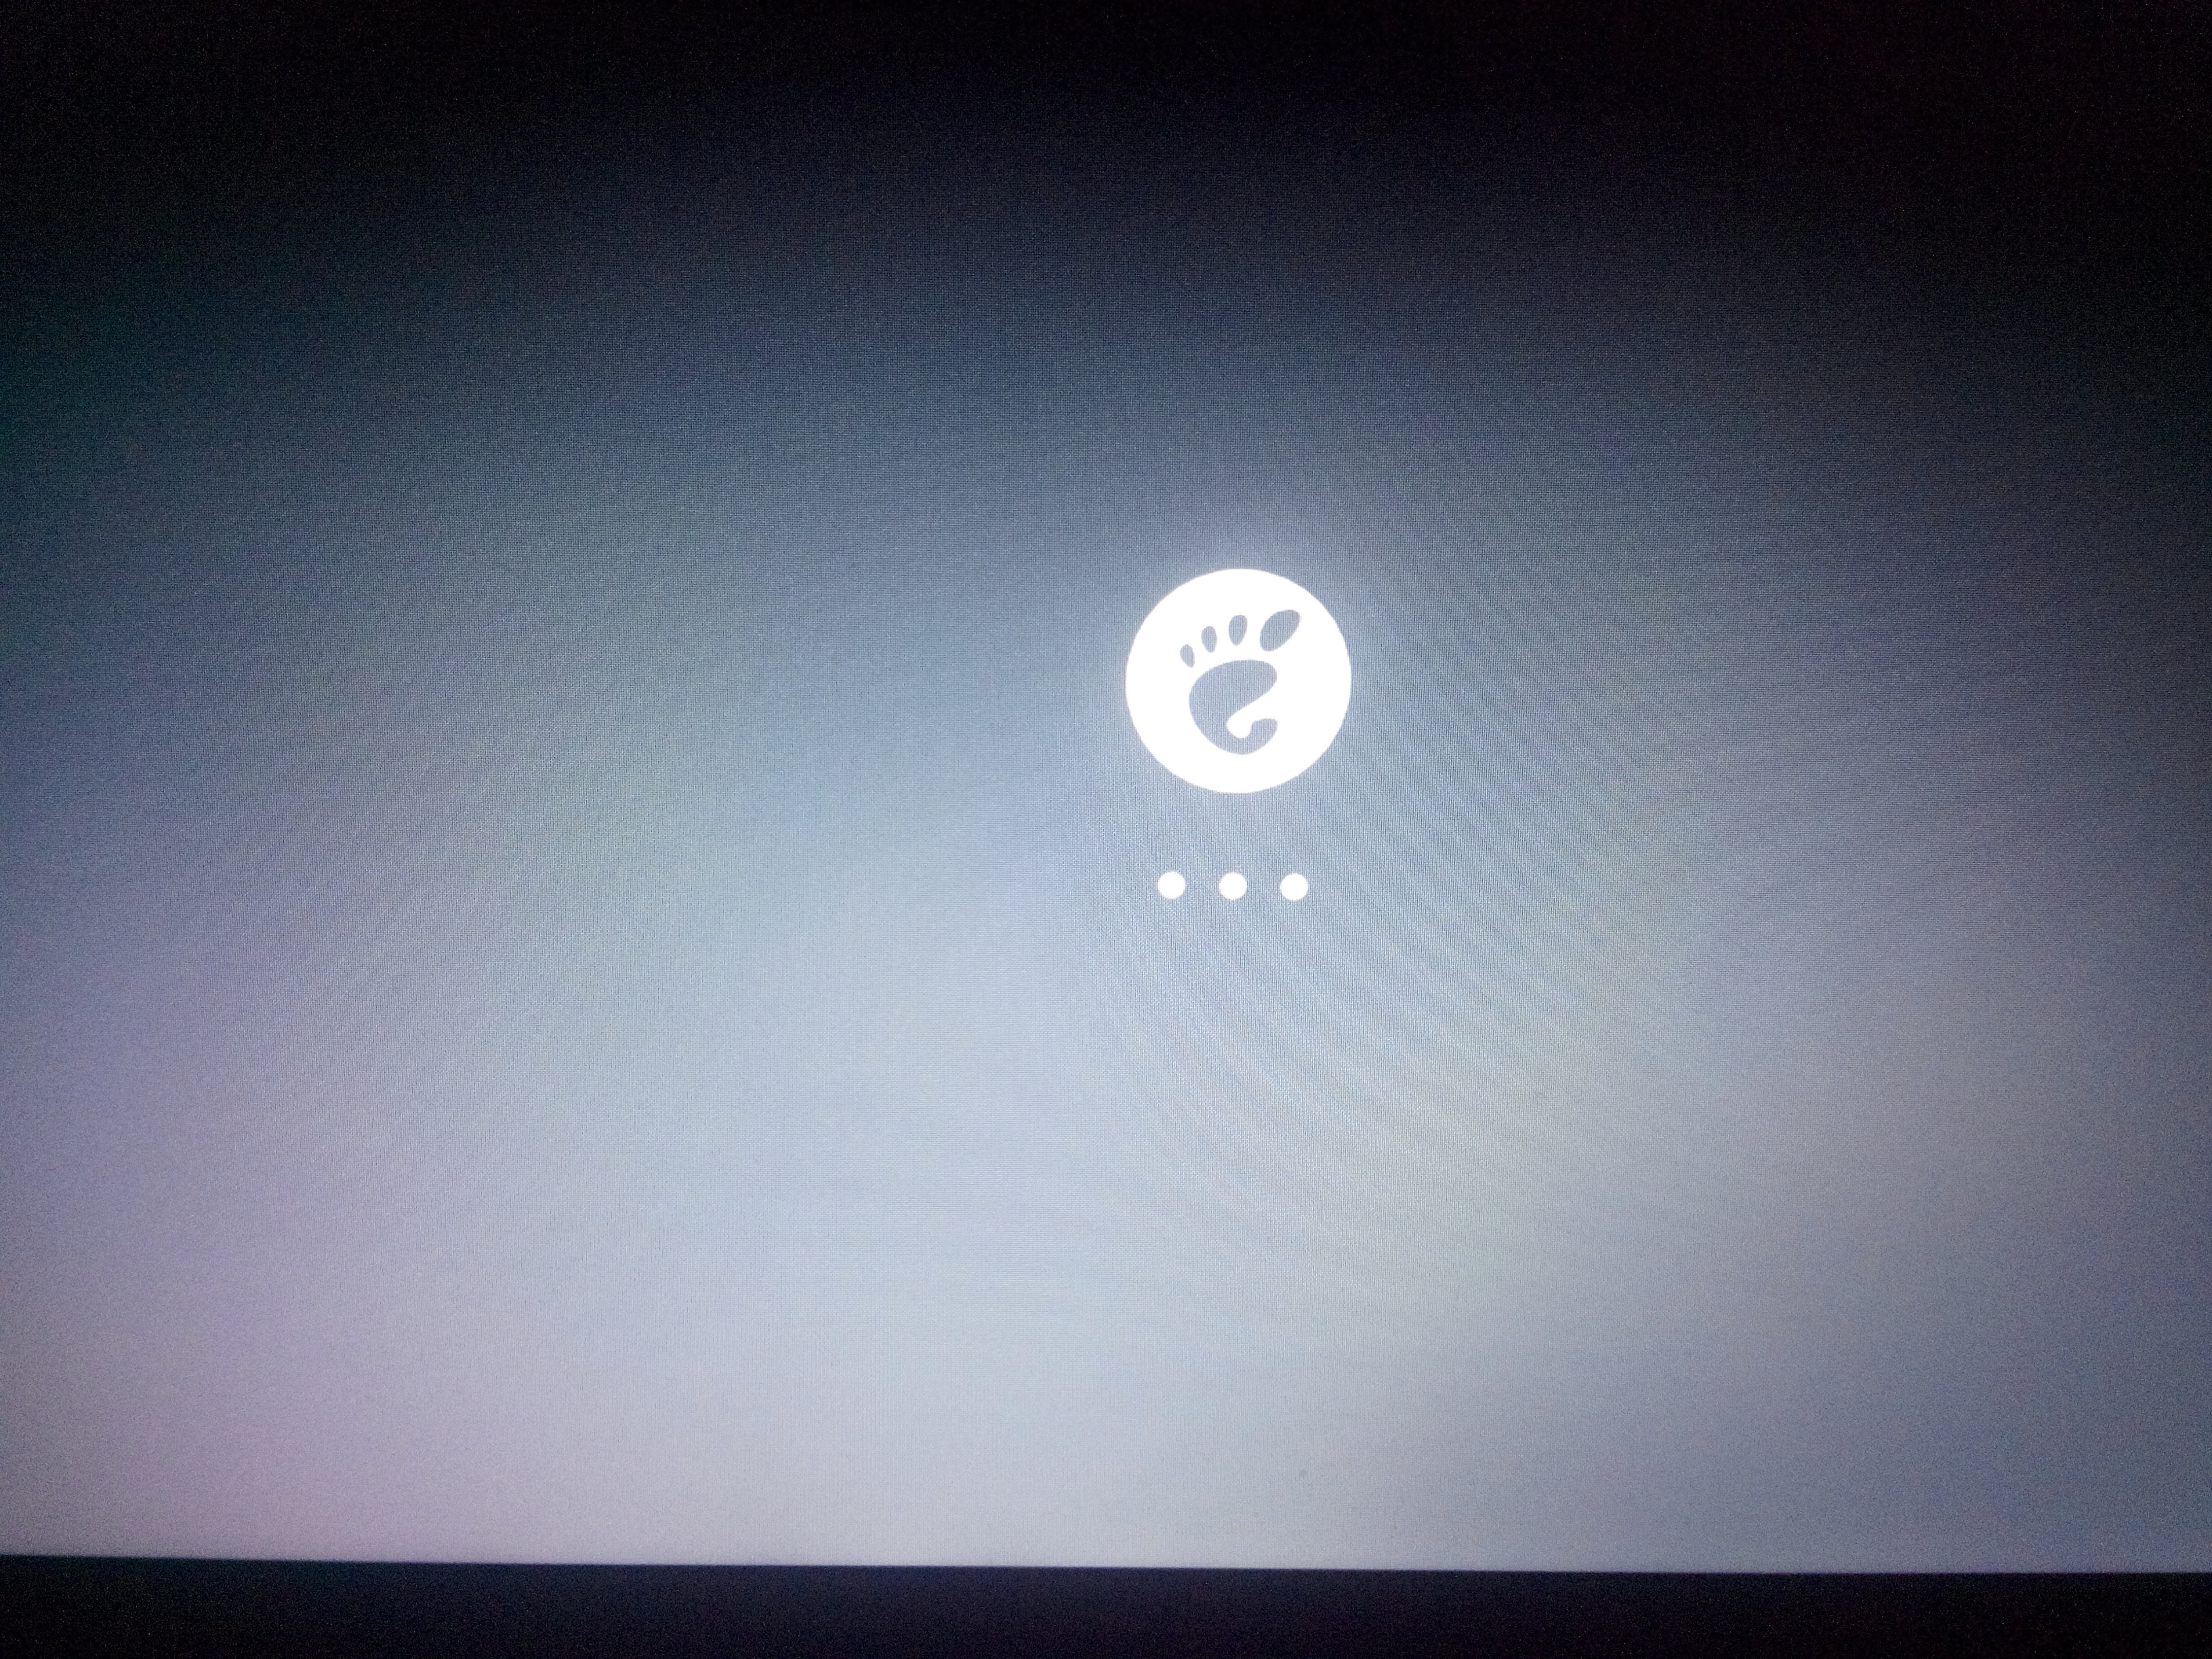  [ÇÖZÜLDÜ]Ubuntu 13.10 acılıs ekranında kalıyor